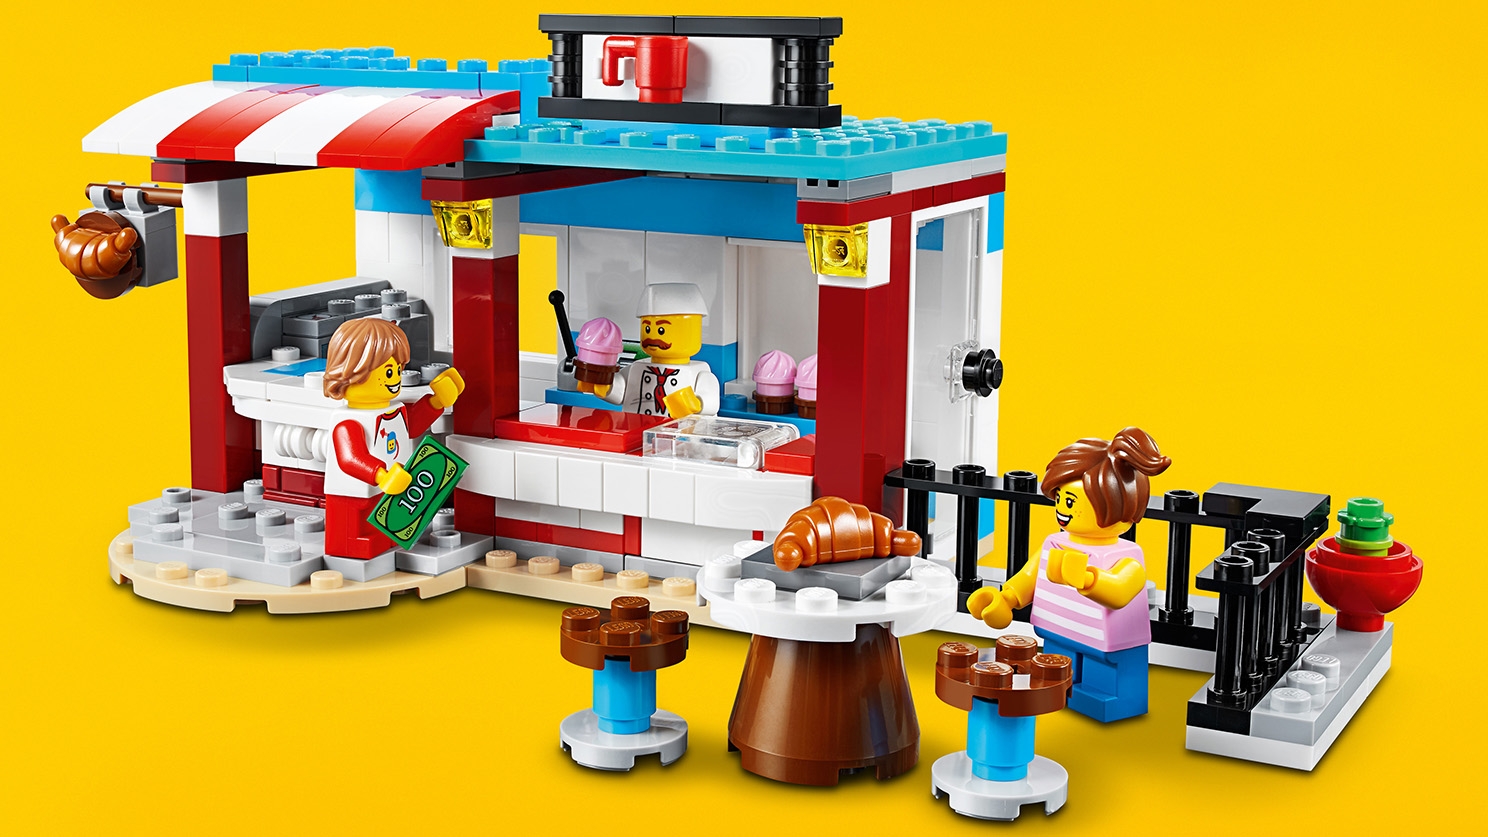 ケーキショップ モジュール式 レゴ クリエイターセット Lego Comキッズ